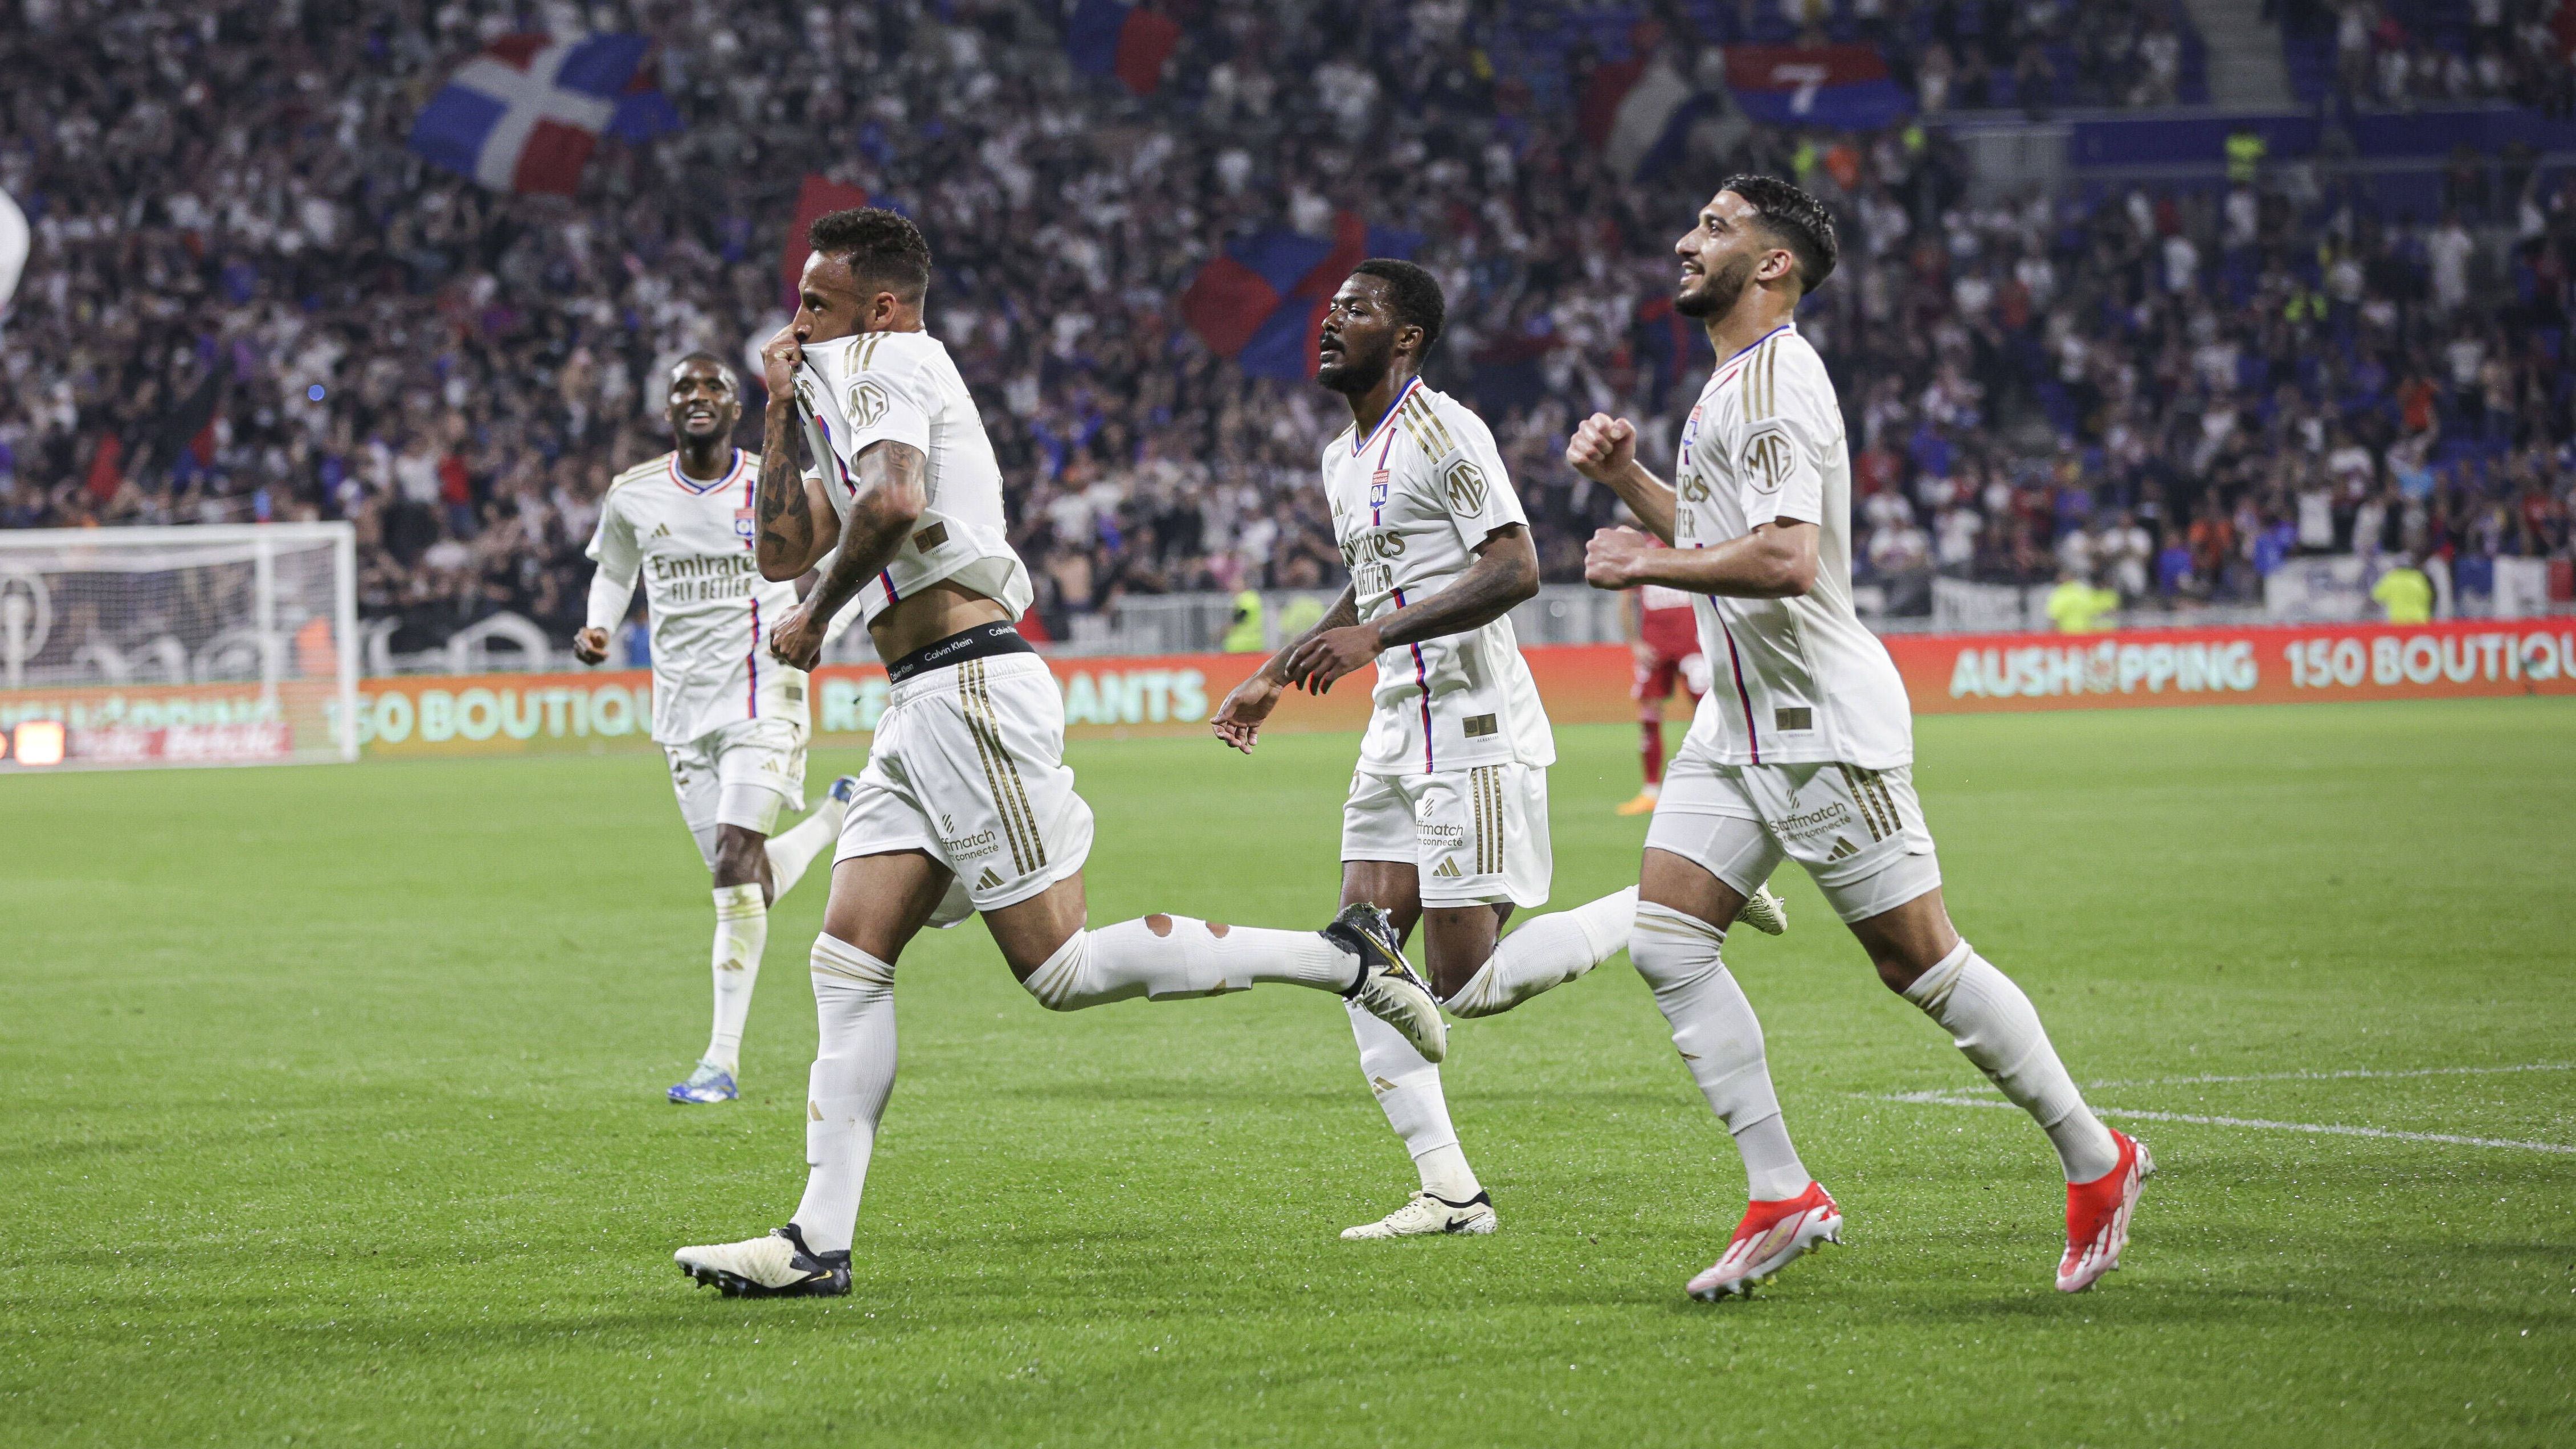 <strong>Siegtreffer in der 106. Minute</strong><br>Olympique Lyon hofft weiter auf den Europapokal. Gegen den Überraschungs-Zweiten der Ligue 1, Stade Brest, drehte OL einen 1:3-Rückstand und gewann am Ende mit 4:3. Der Siegtreffer fiel dabei in der 16. Minute (!) der Nachspielzeit per Foulelfmeter. Wie konnte das passieren? ...